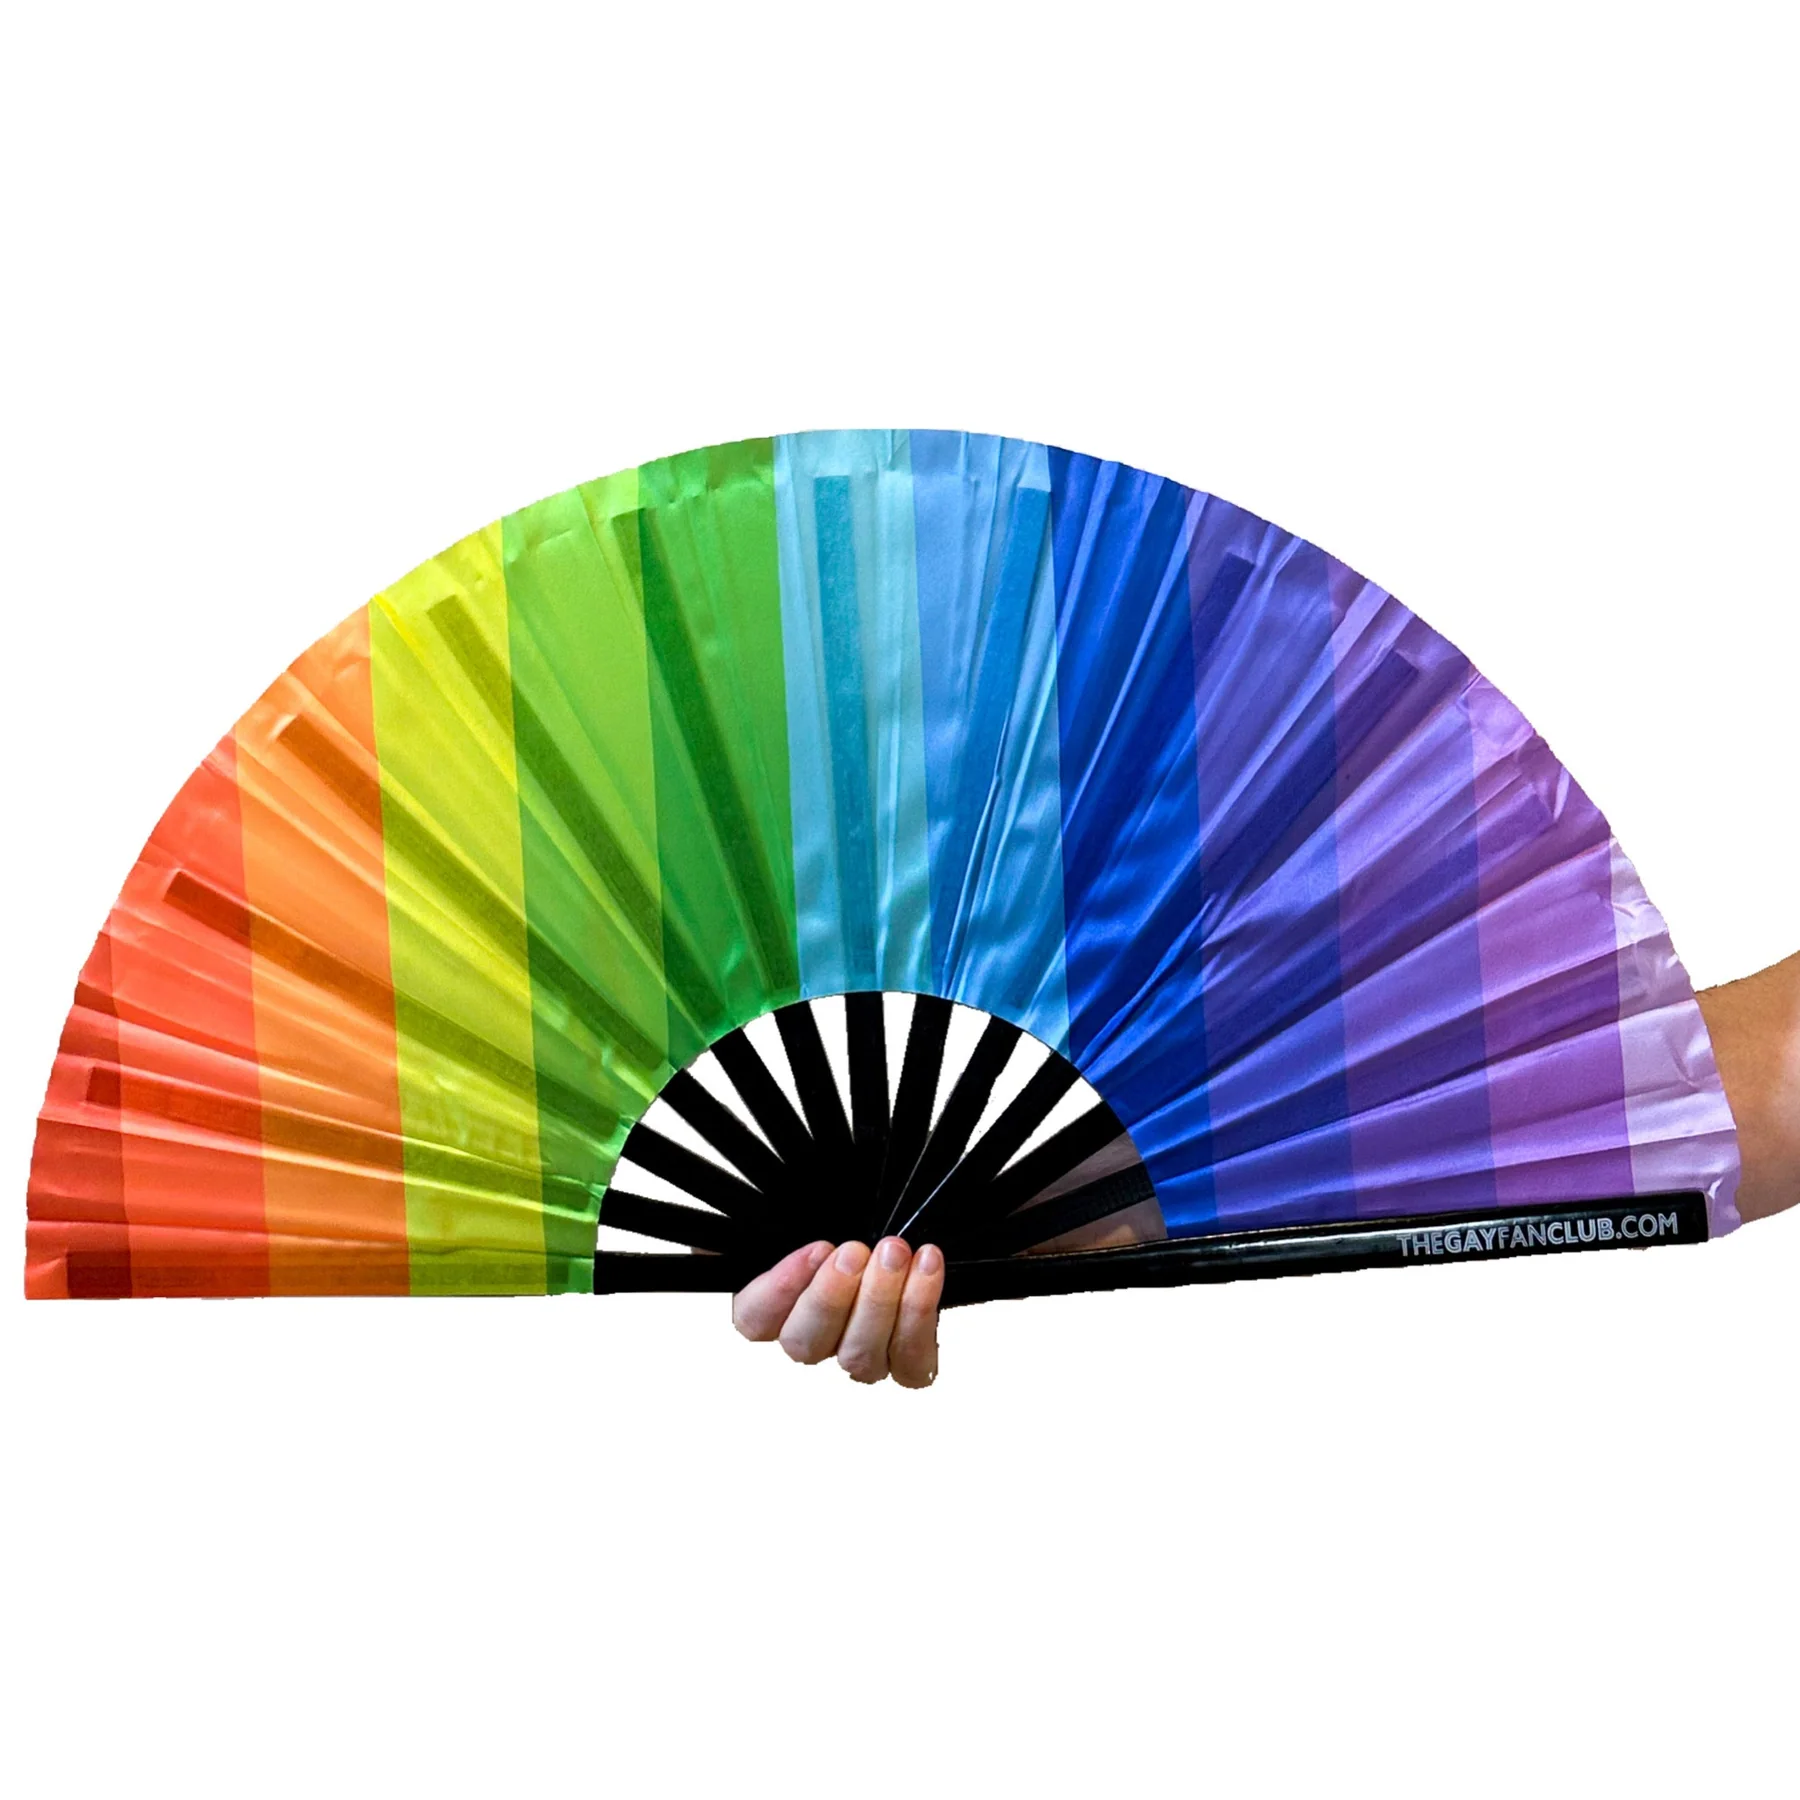 The Gay Fan Club Taste the Rainbow